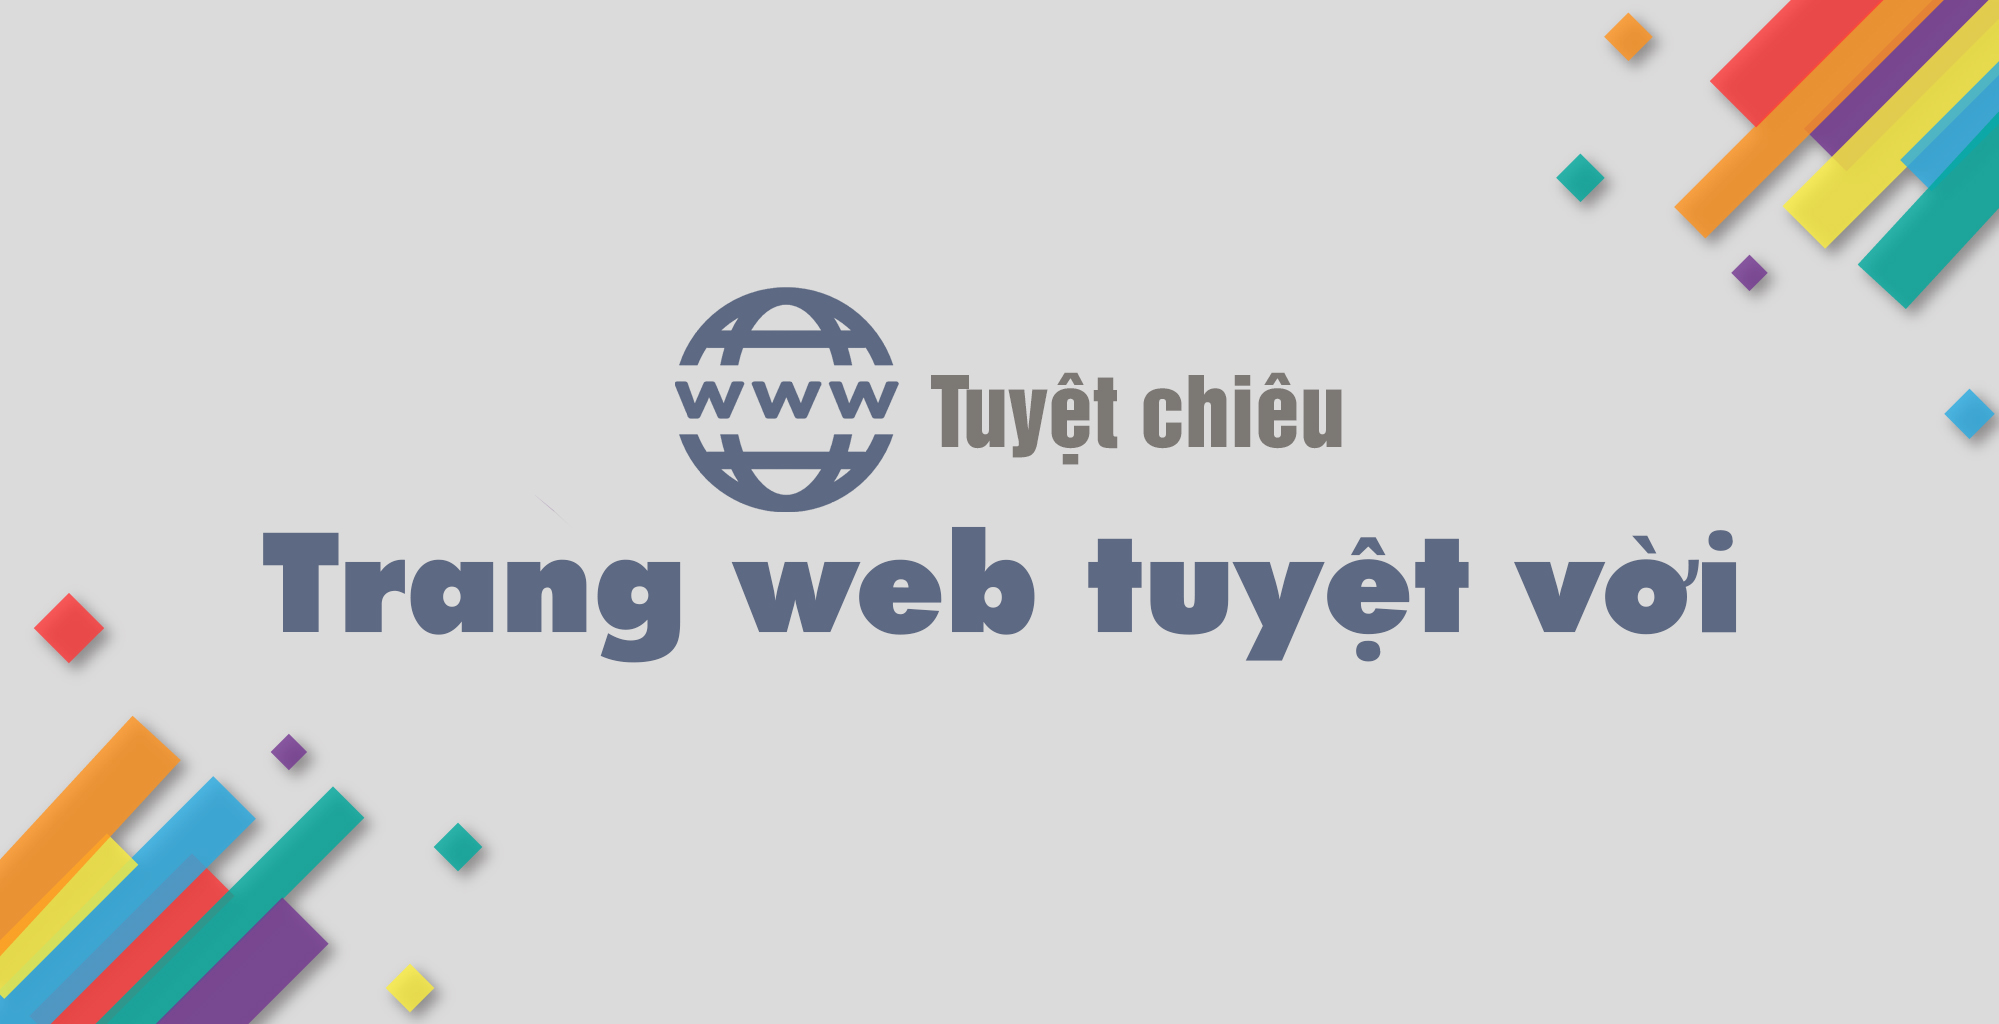 Nhung Tuyet Chieu De Co Mot Trang Web Tuyet Voi